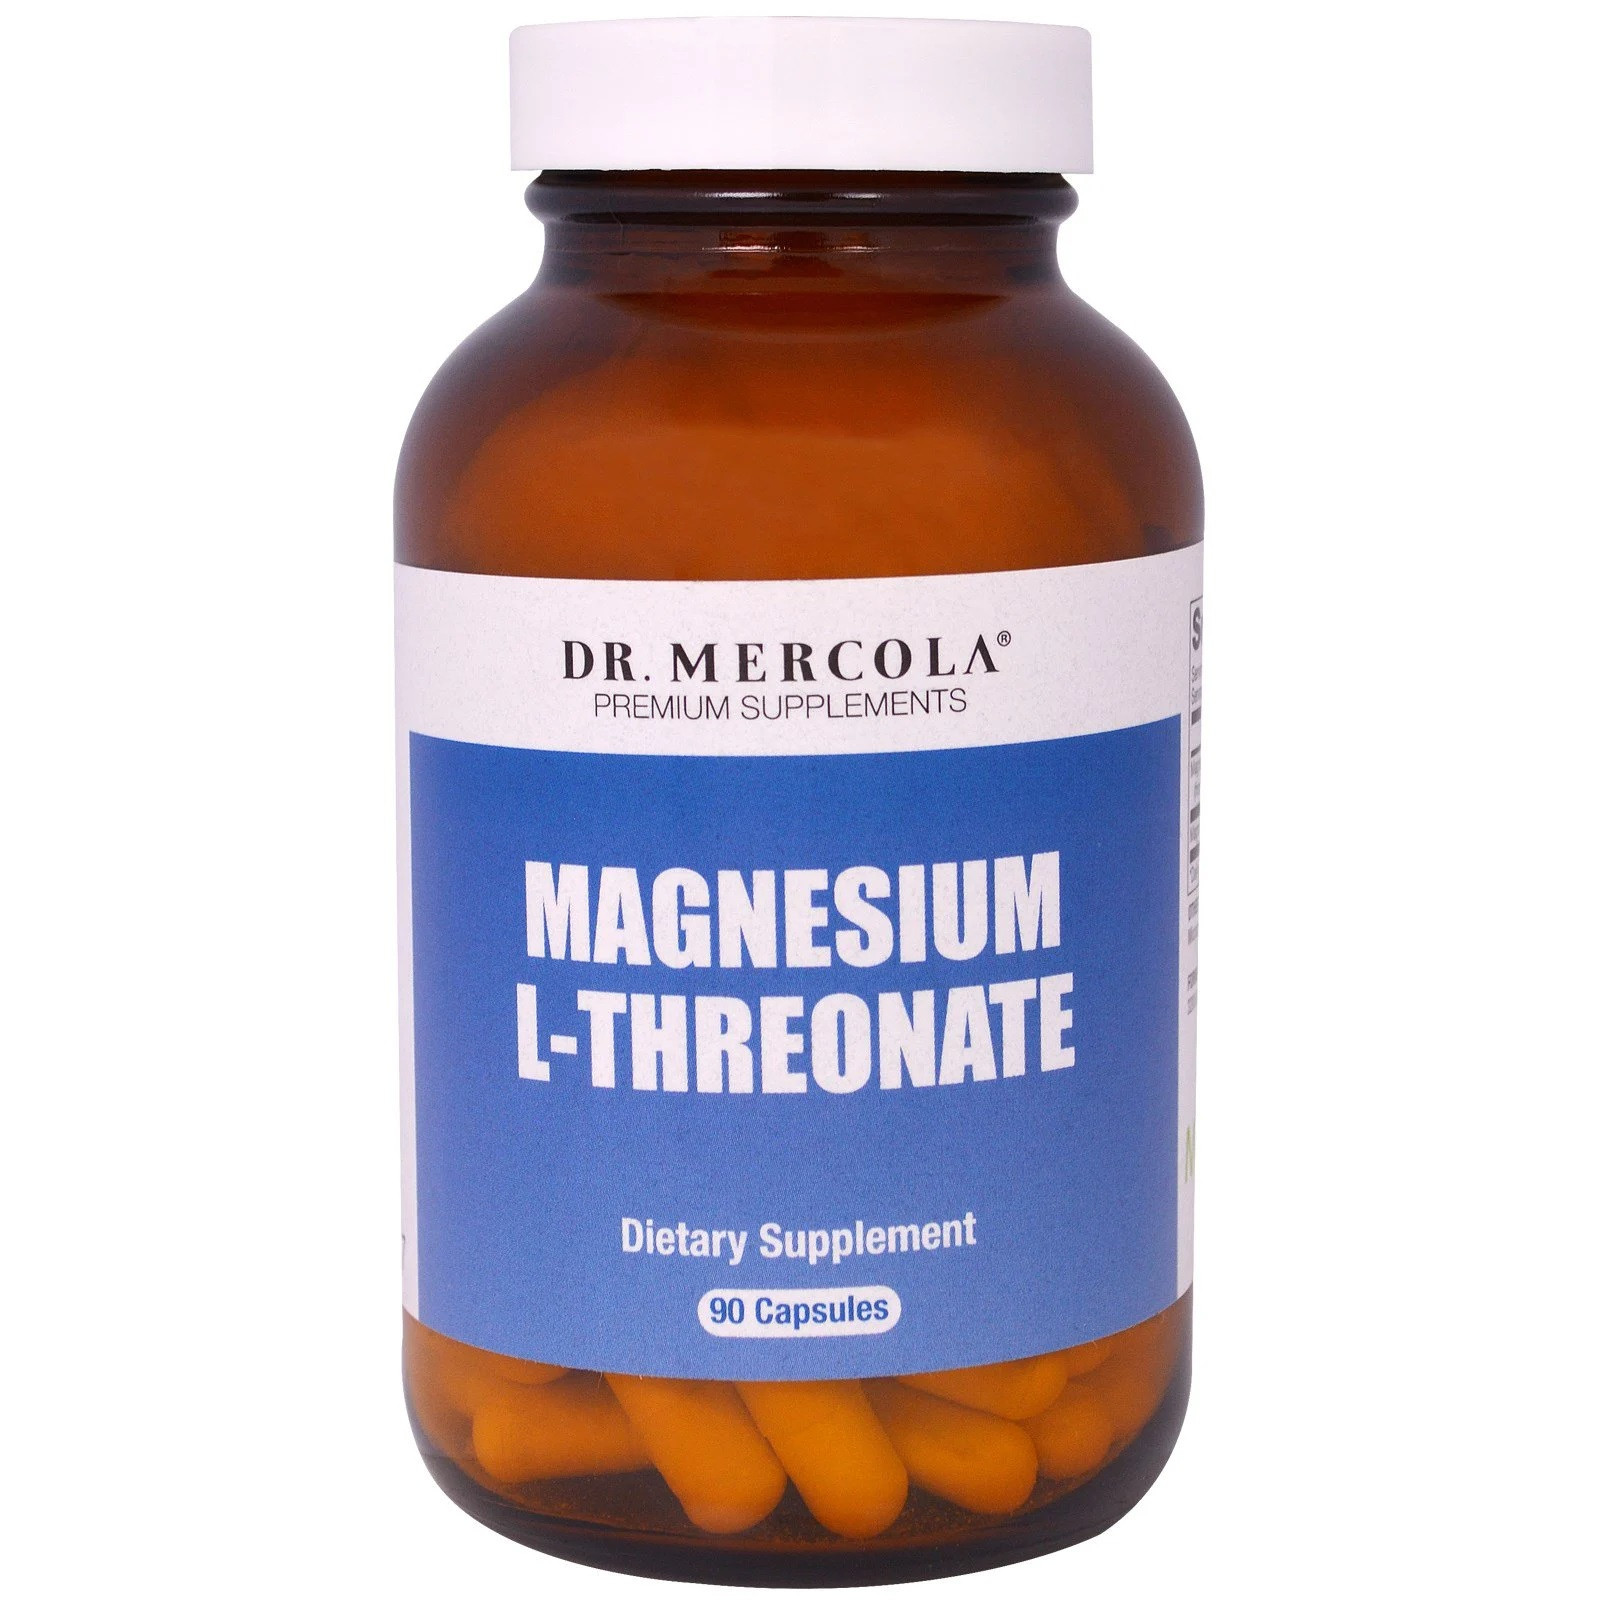 Magnesium-L-Threonate (90 Capsules) - Dr. Mercola